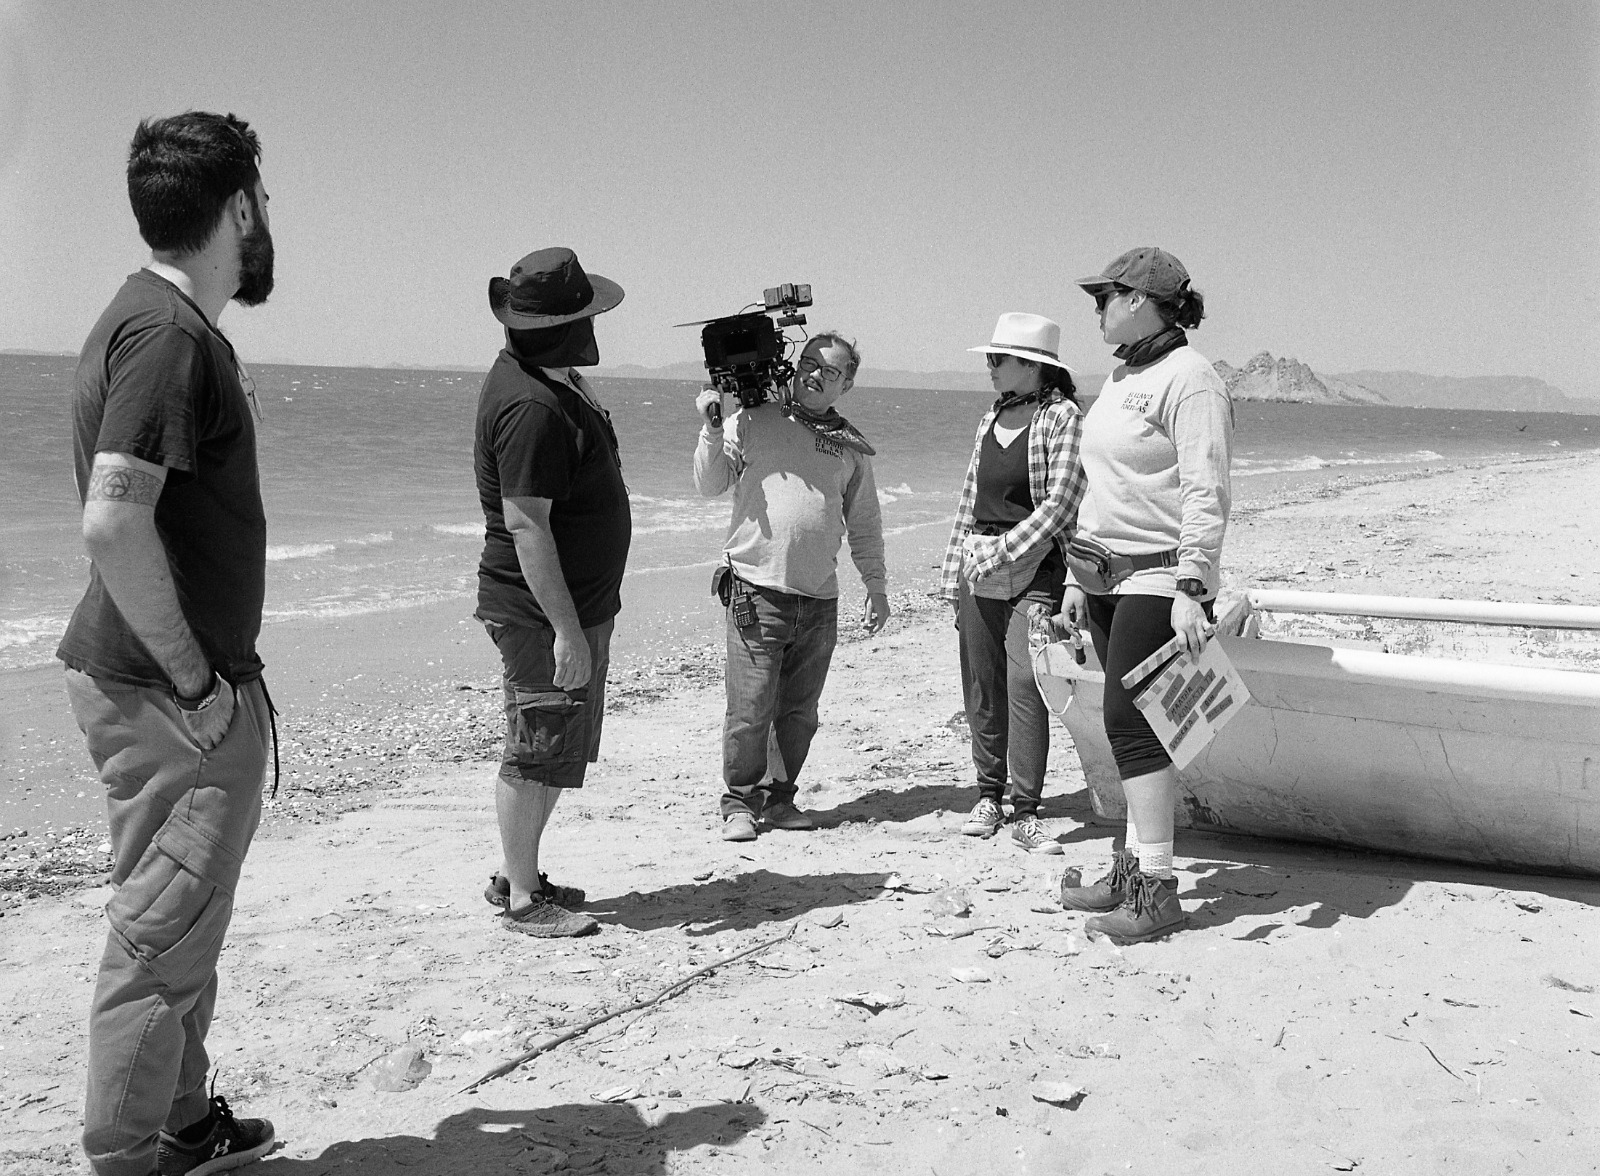 Participará Jacalito Films en DocxMX con “El Llanto de las Tortugas”